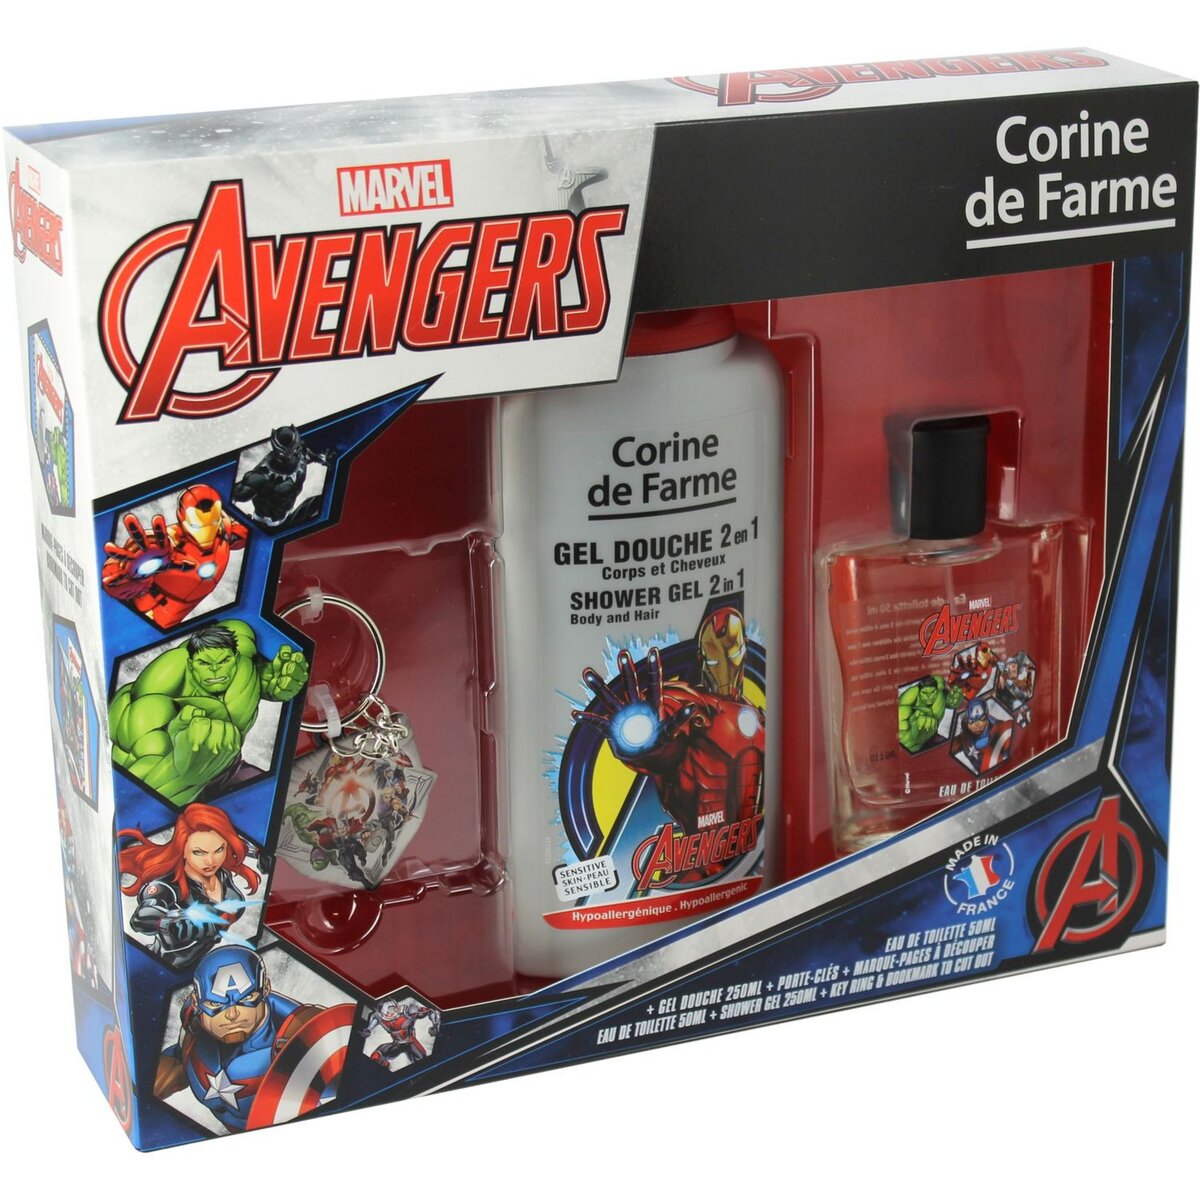 AVENGERS Avengers coffret eau de toilette +gel douche +porte clé